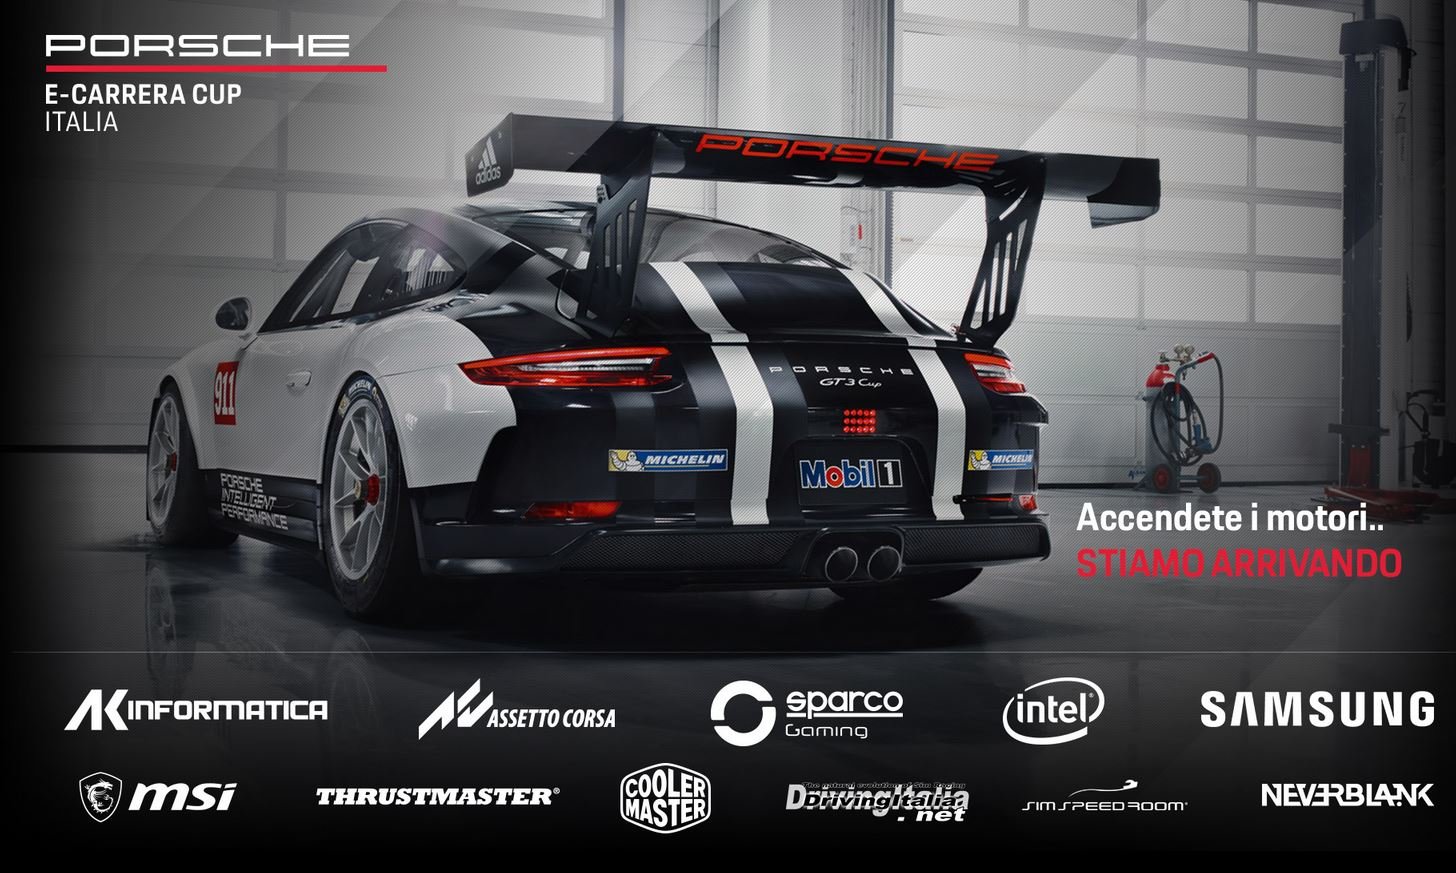 More information about "Il Porsche e-Carrera Cup Italia presentato ad Imola con un simracing show"